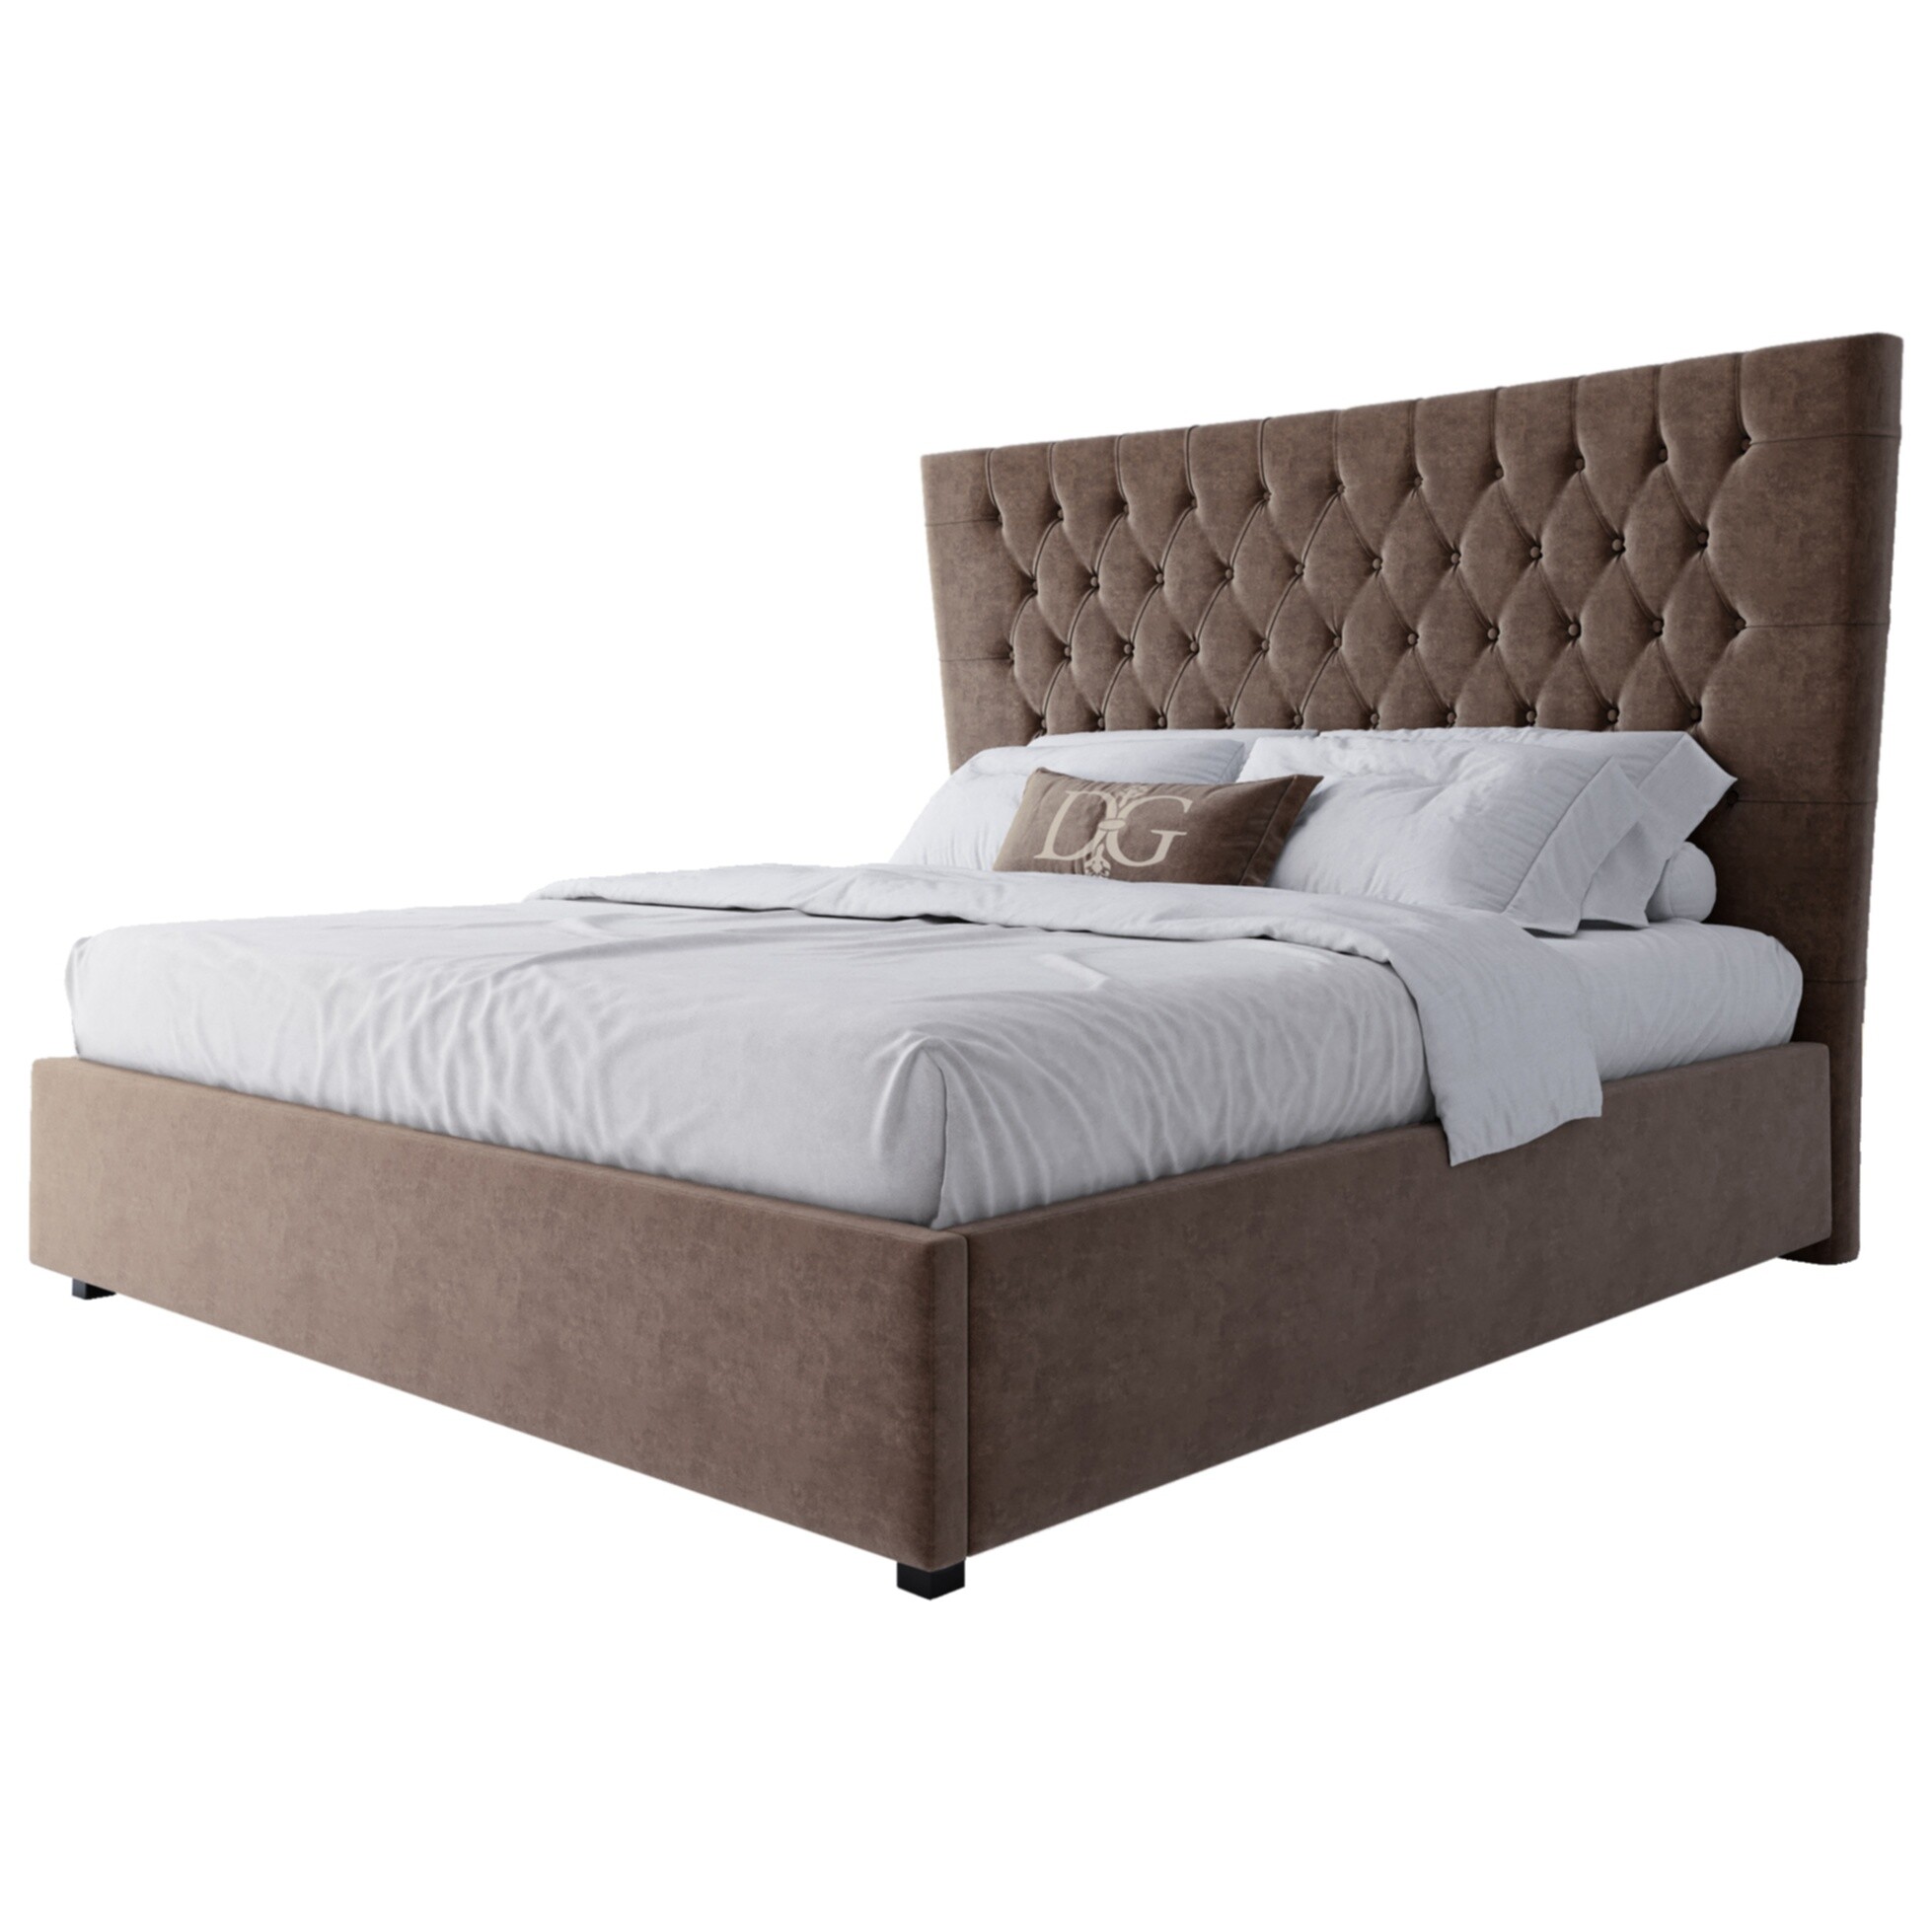 Кровать двуспальная с мягким изголовьем 180х200 см серо-коричневая QuickSand